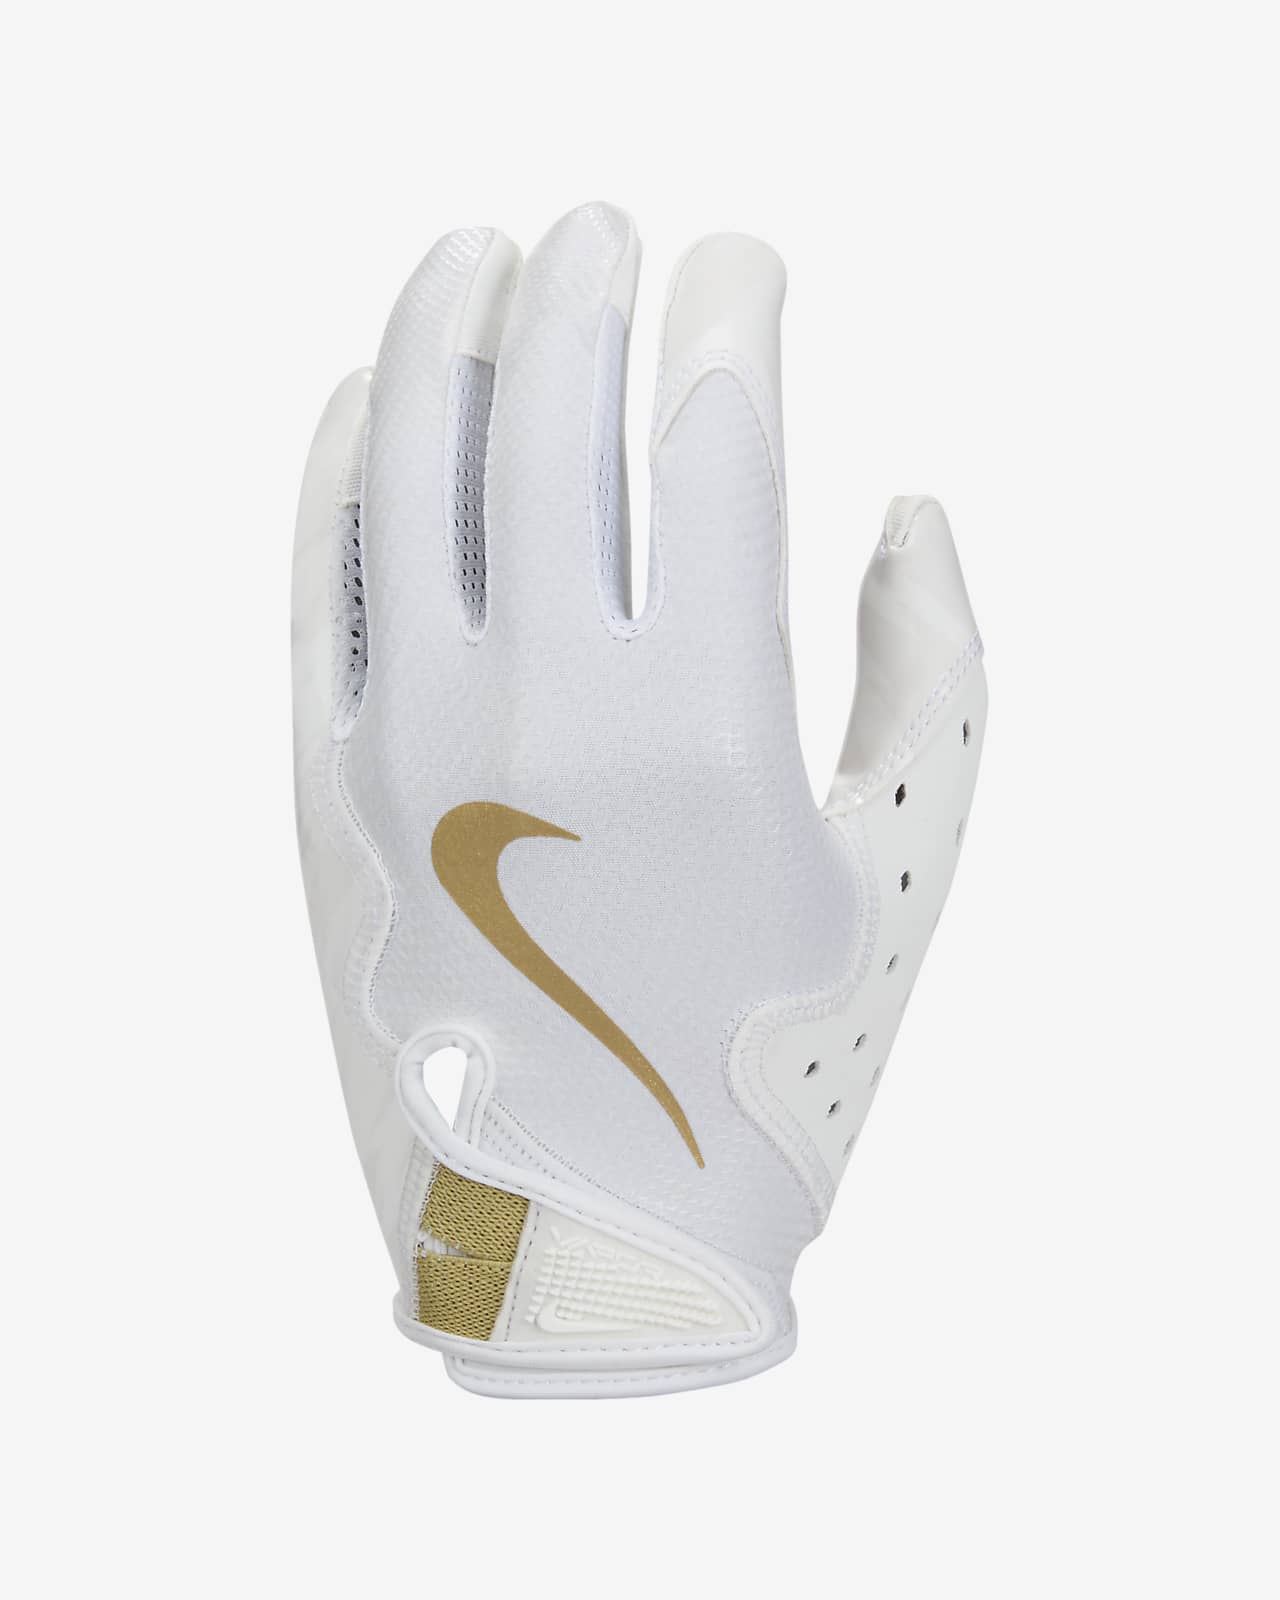 Nike Vapor Jet 8.0 Women's Football Gloves